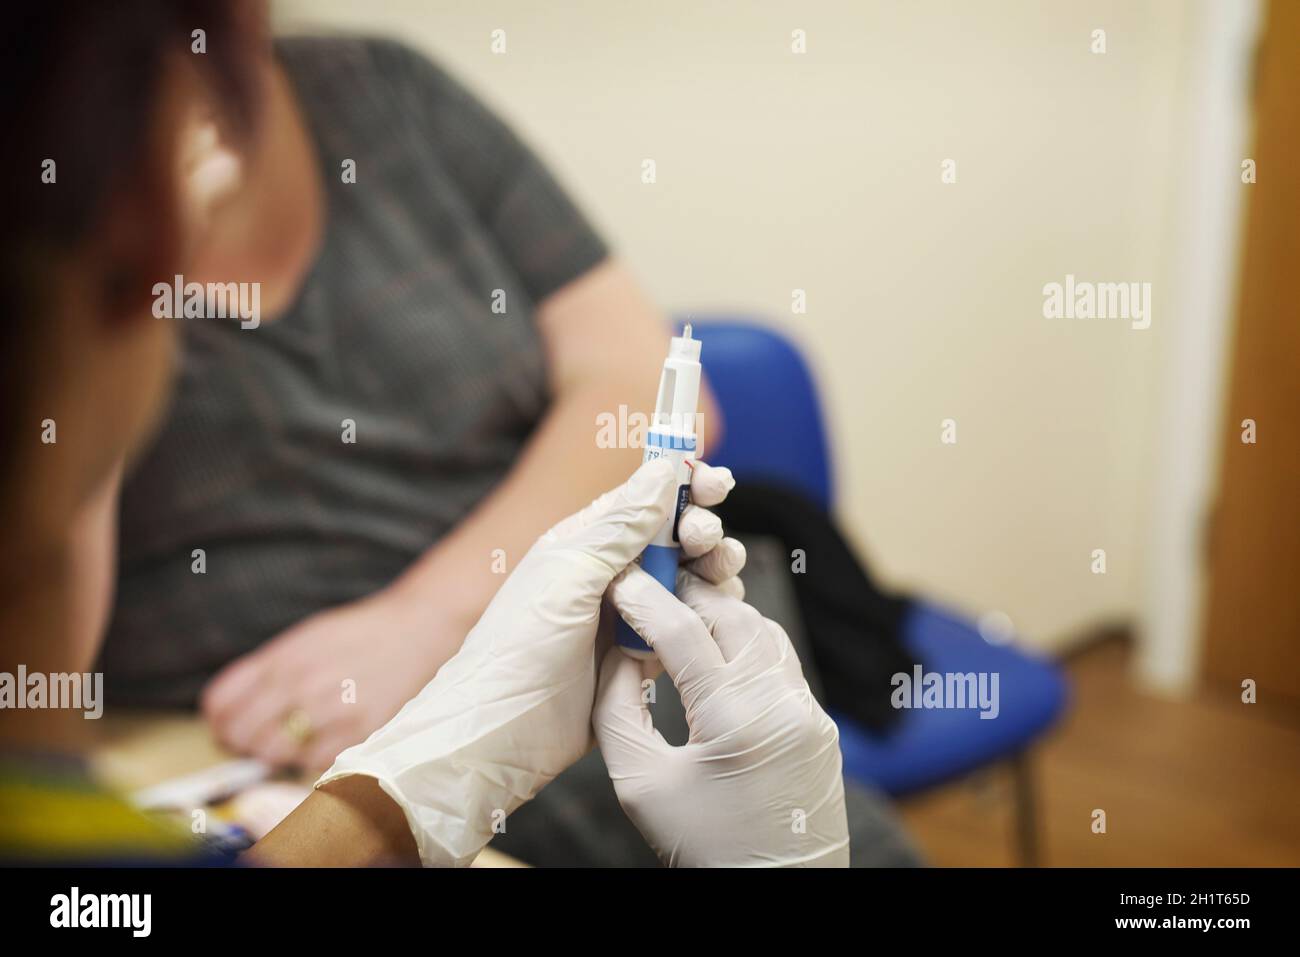 L'infermiere di chirurgia femminile GP che indossa i guanti si prepara a somministrare un'iniezione a una paziente in un intervento chirurgico NHS Foto Stock